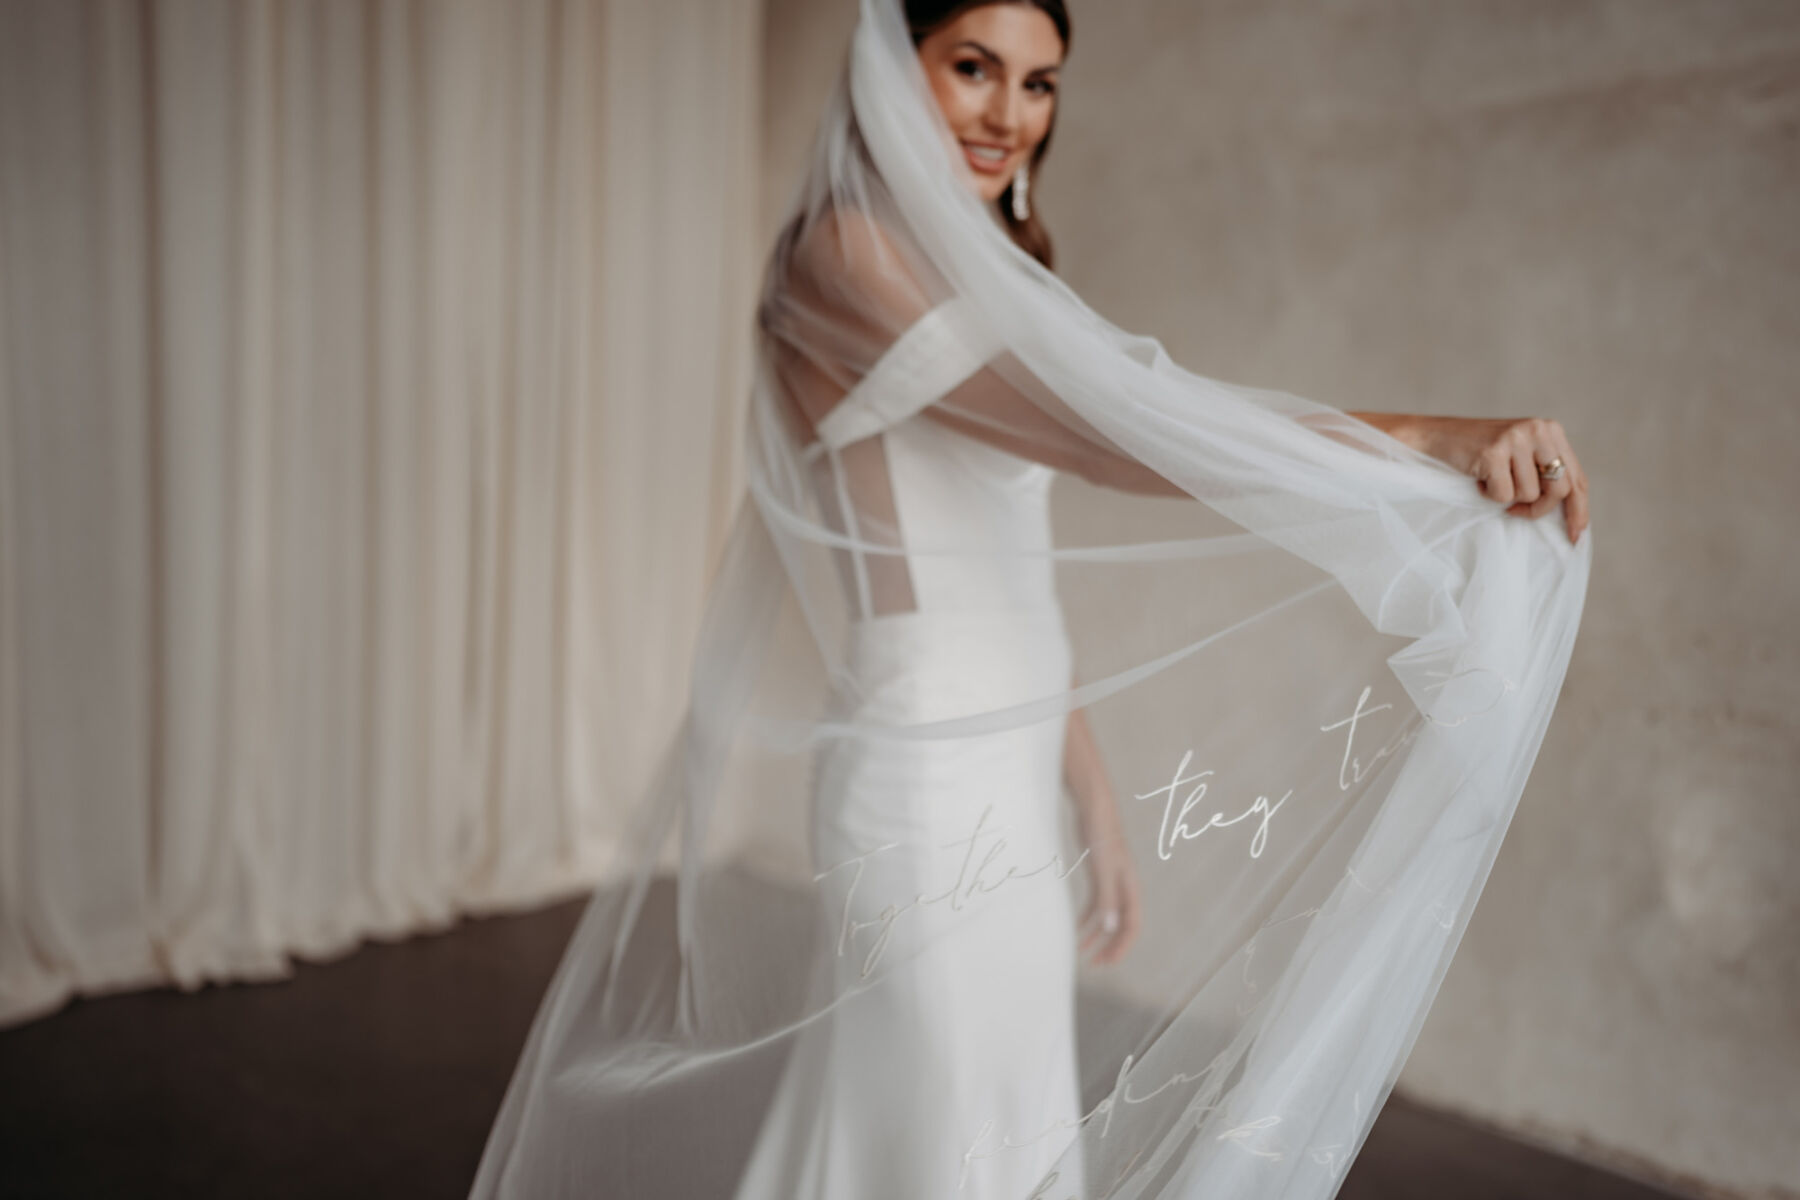 Embroidered wedding veils Rebecca Anne Designs 32